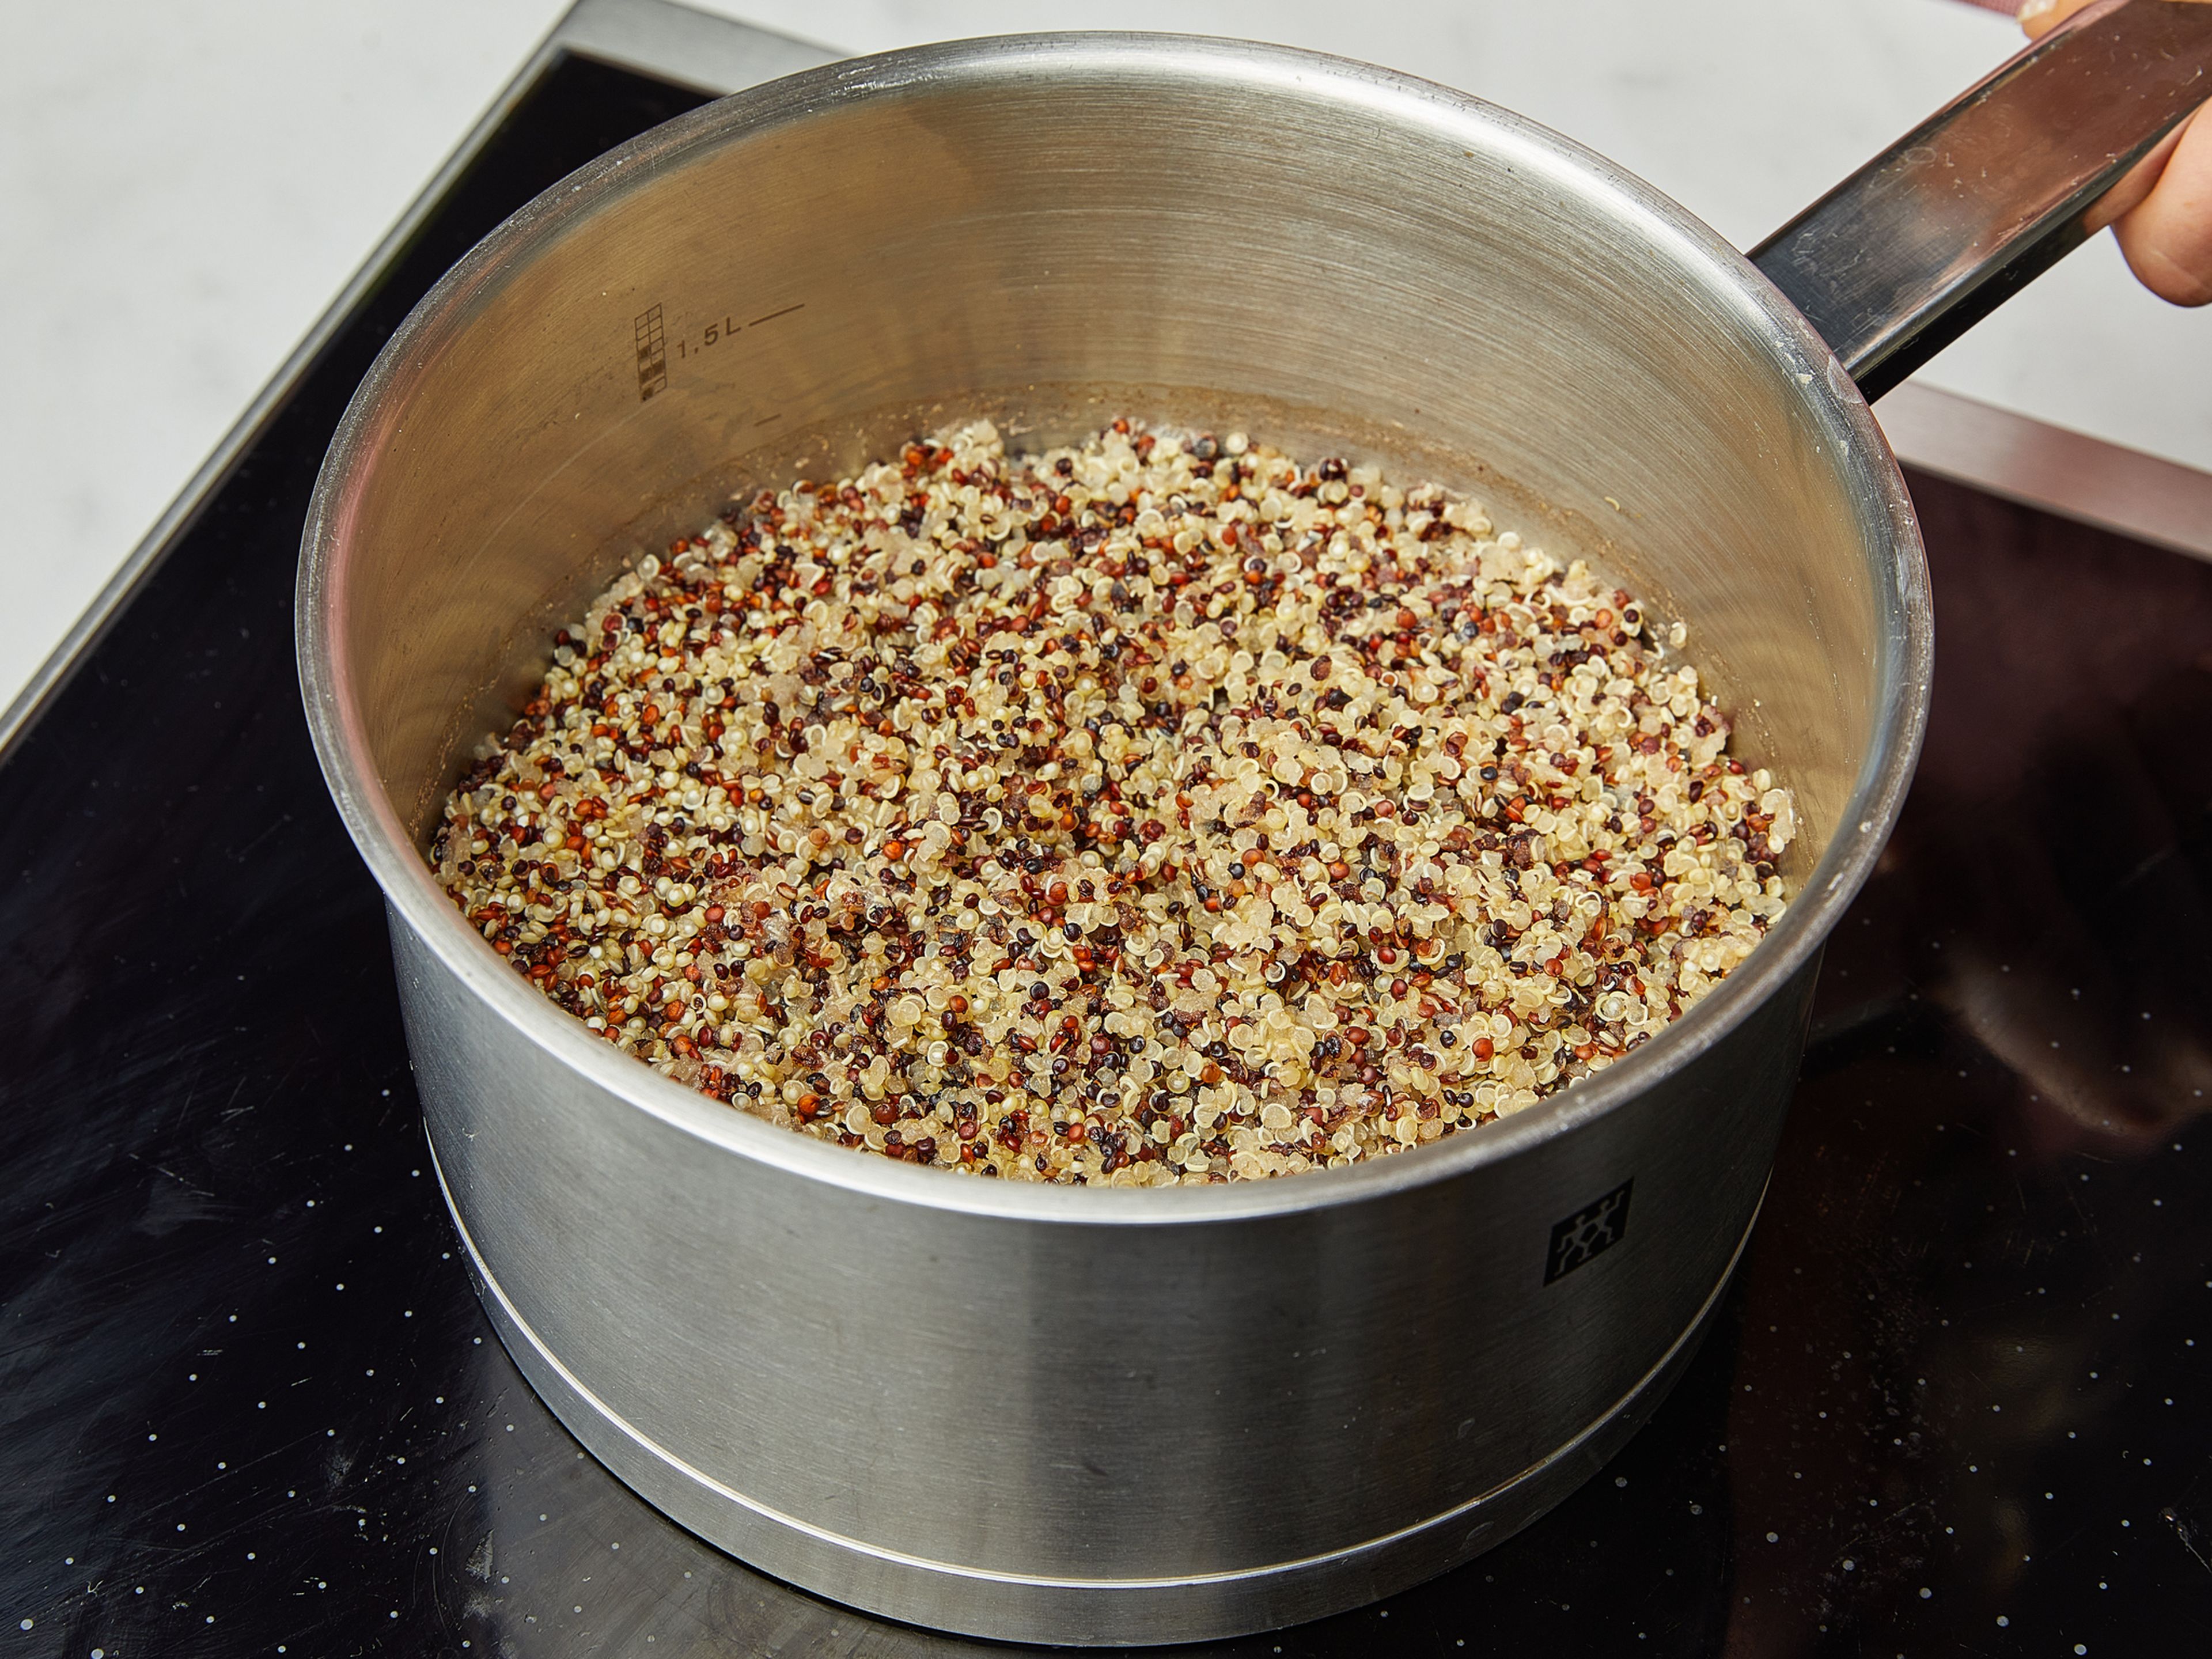 Spüle die Quinoa gründlich ab und lass sie abtropfen. Dann nach Anleitung kochen, d.h. Quinoa in Wasser geben, salzen und zum Kochen bringen. Dann die Hitze reduzieren und ca. 20 Min. köcheln lassen, bis die Quinoa gar ist und das Wasser aufgesogen wurde.